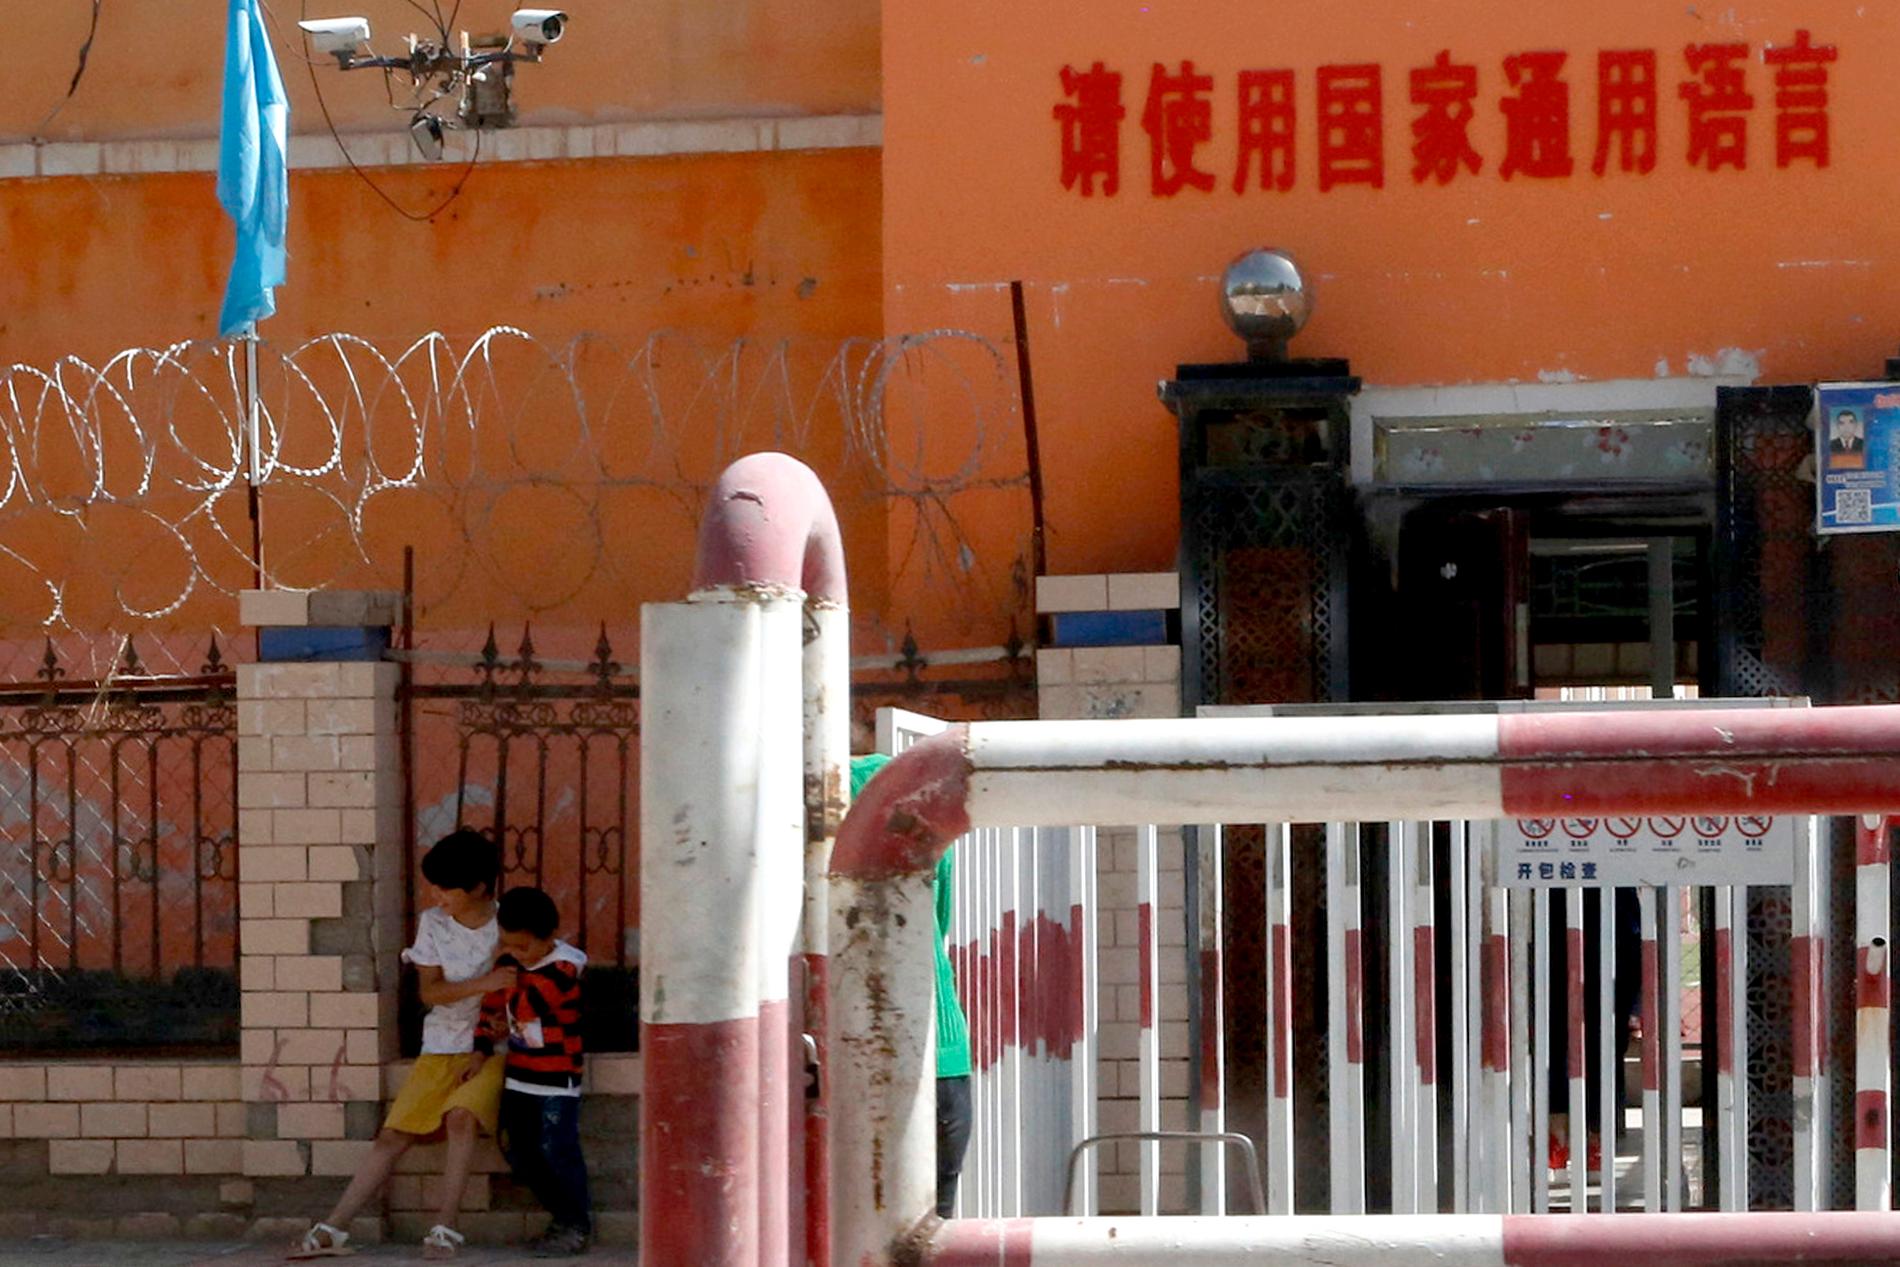 Som ett steg i att kontrollera sina medborgare har Kinas nuvarande ledning byggt ett invecklat nät av övervakning med bland annat ansiktsigenkänning. Här, i Xinjiang-provinsen där människor från muslimska minoritetsgrupper, framför allt uigurer, bor är övervakningen mycket kraftig.